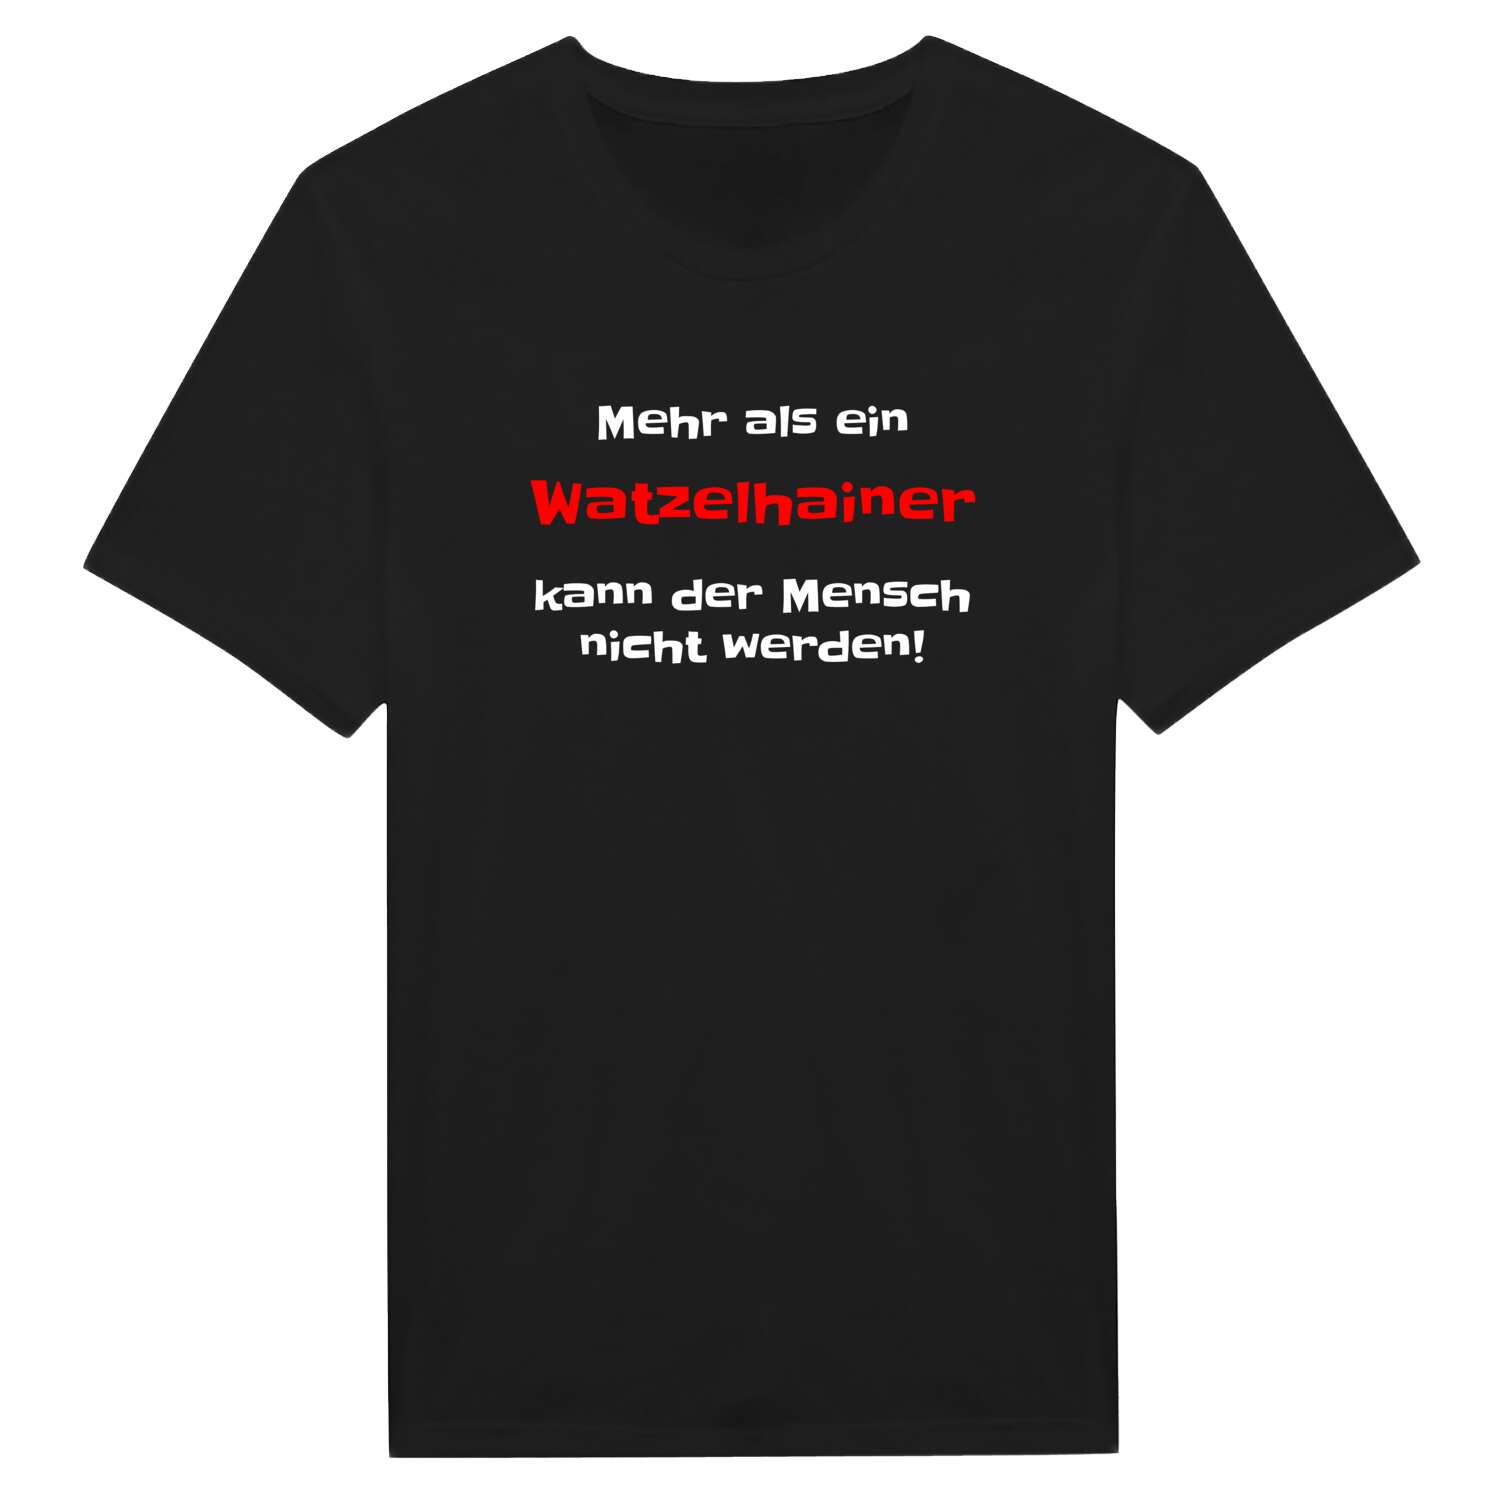 Watzelhain T-Shirt »Mehr als ein«